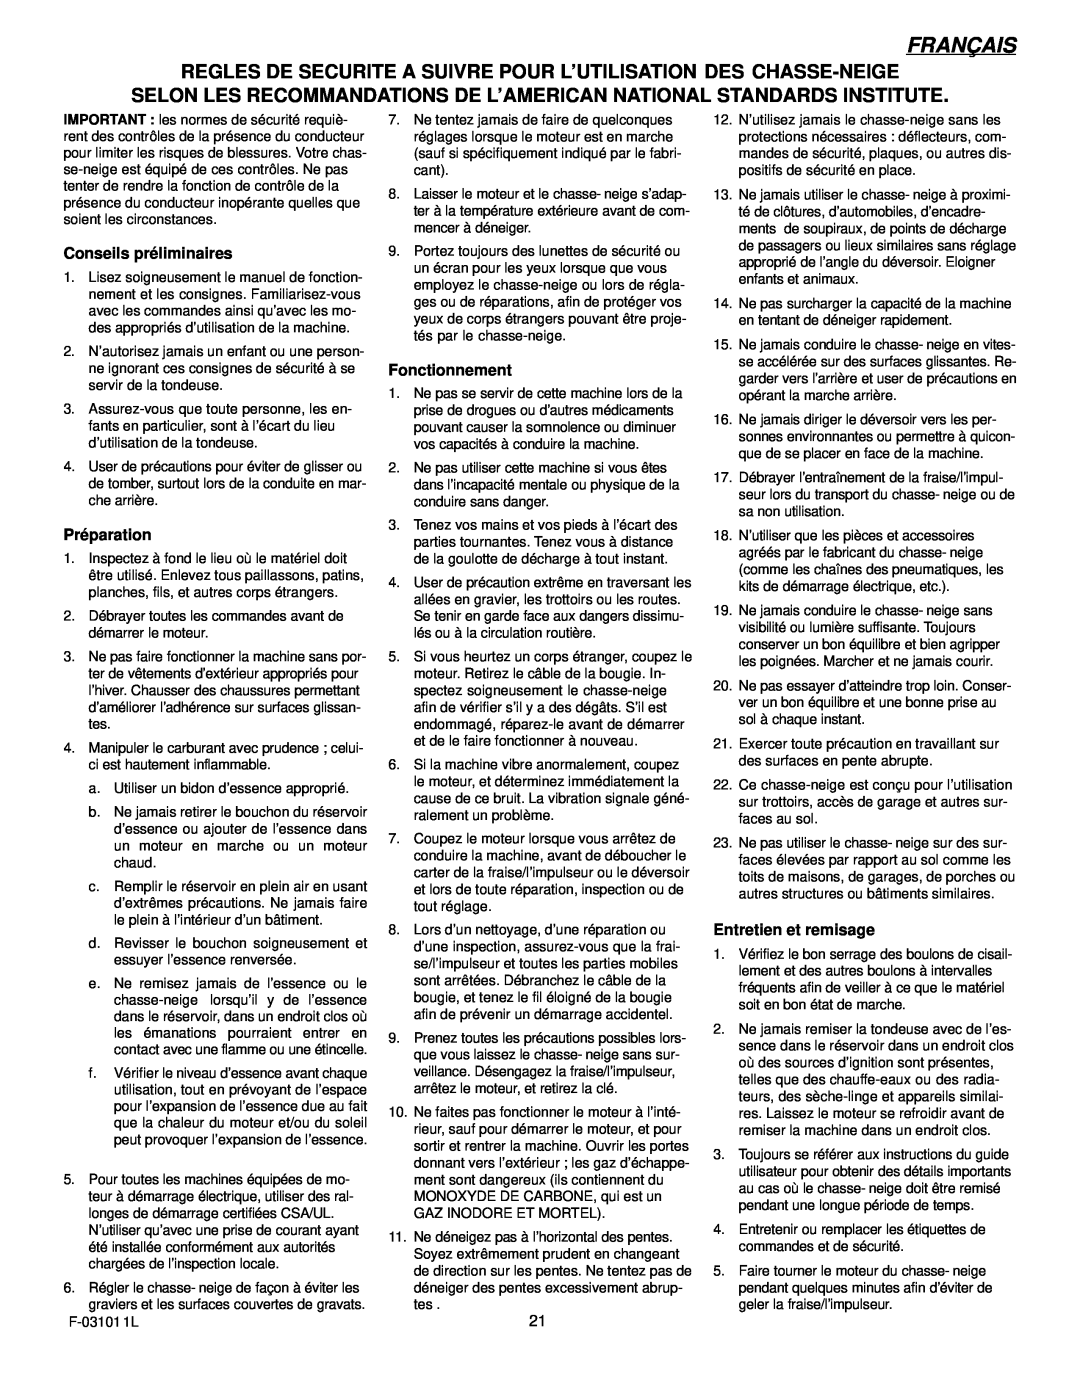 Murray 624504x4C manual Français, Conseils préliminaires, Préparation, Fonctionnement, Entretien et remisage 